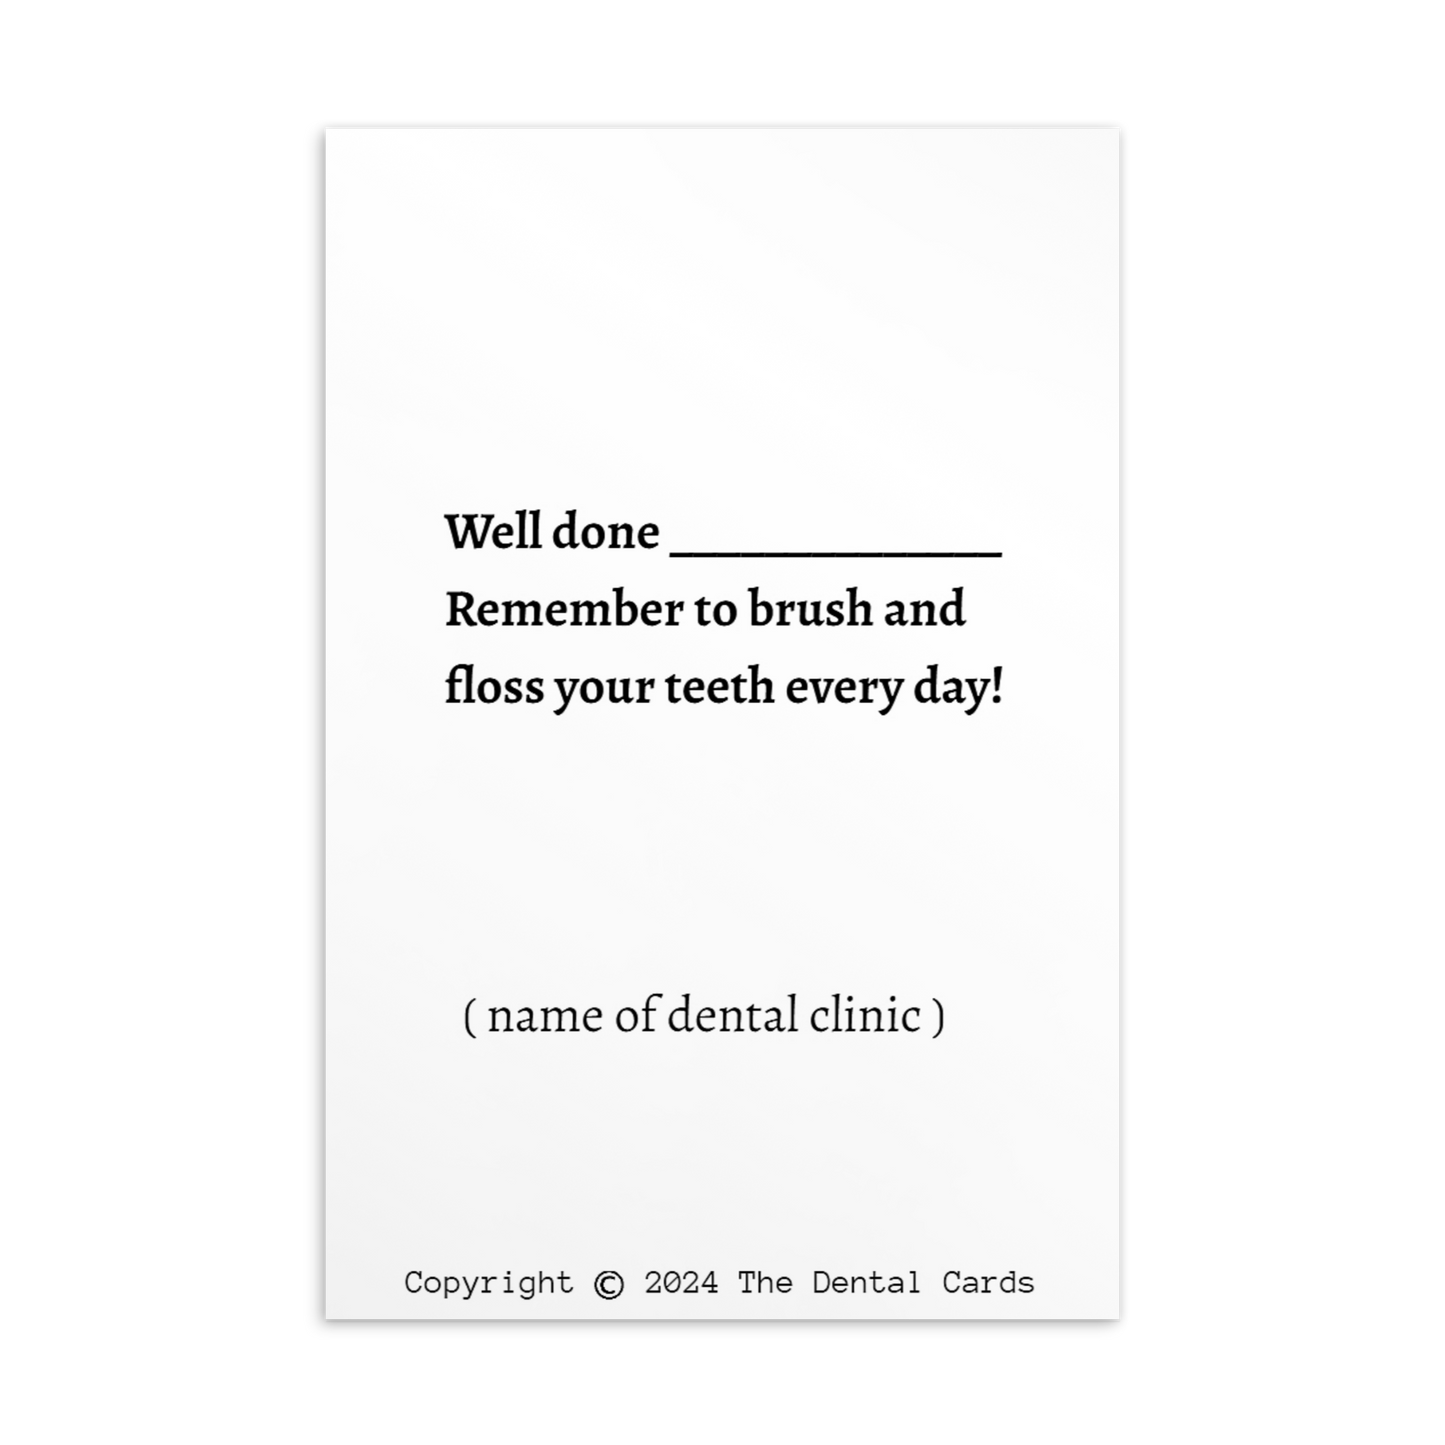 Dental Motivational & Reward Cards- I Was Brave At The Dentist!